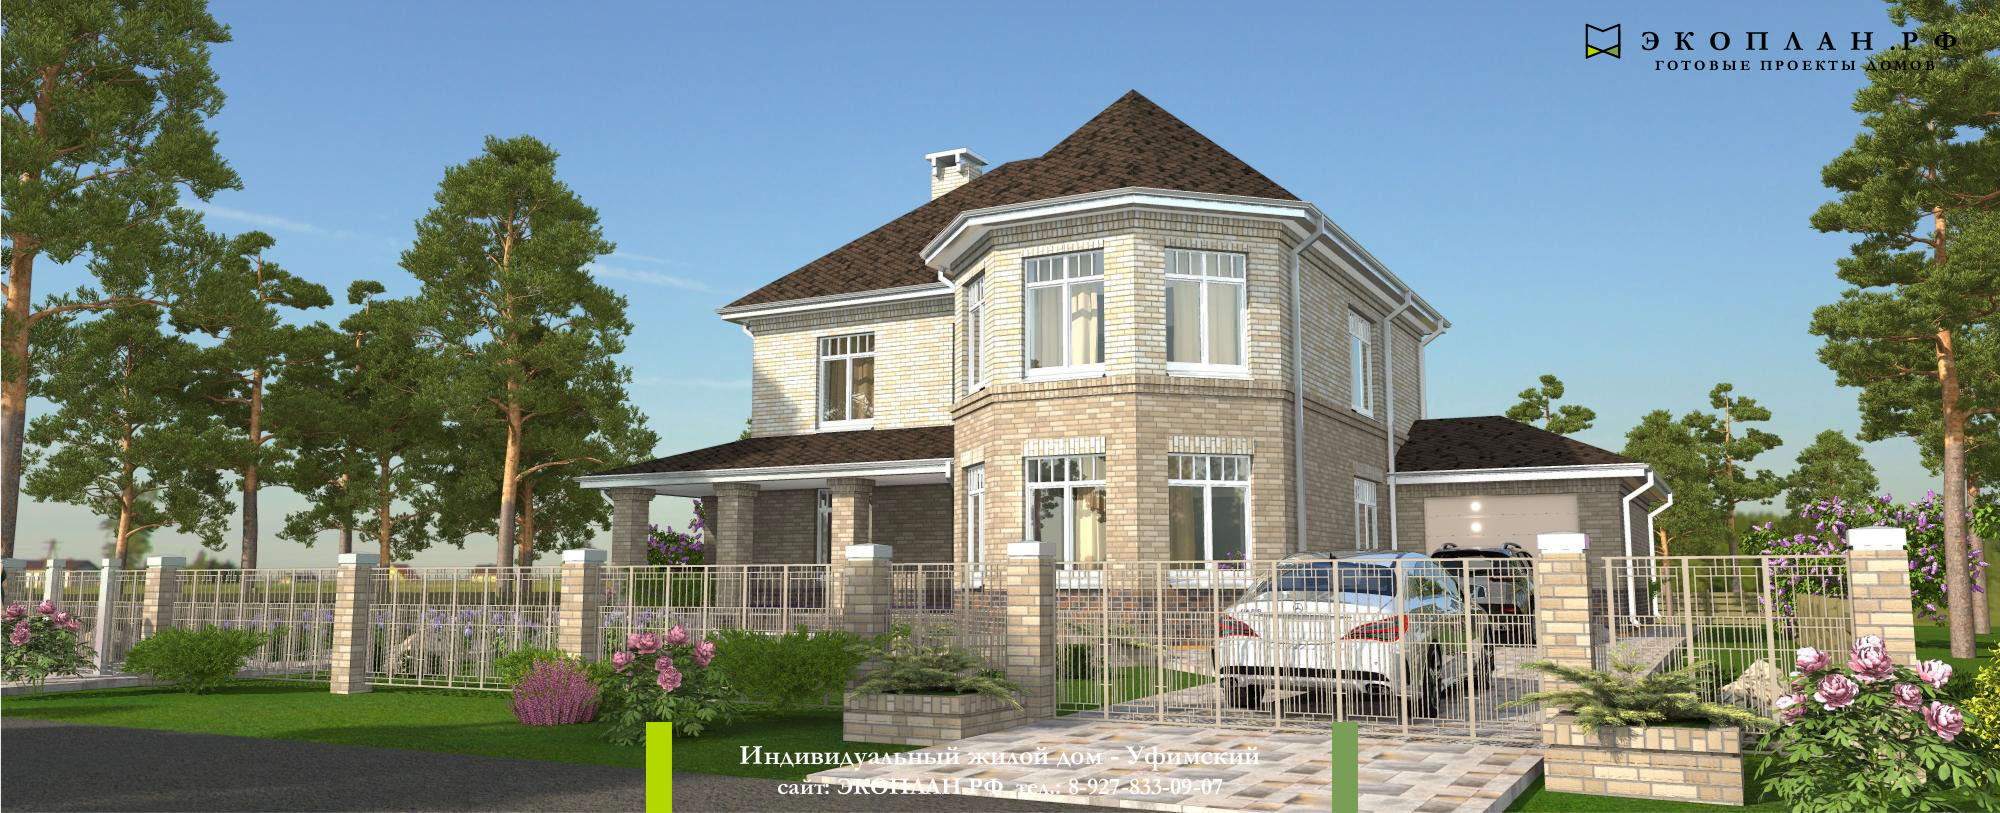 Уфимский - Готовый проект дома - Экоплан фасад